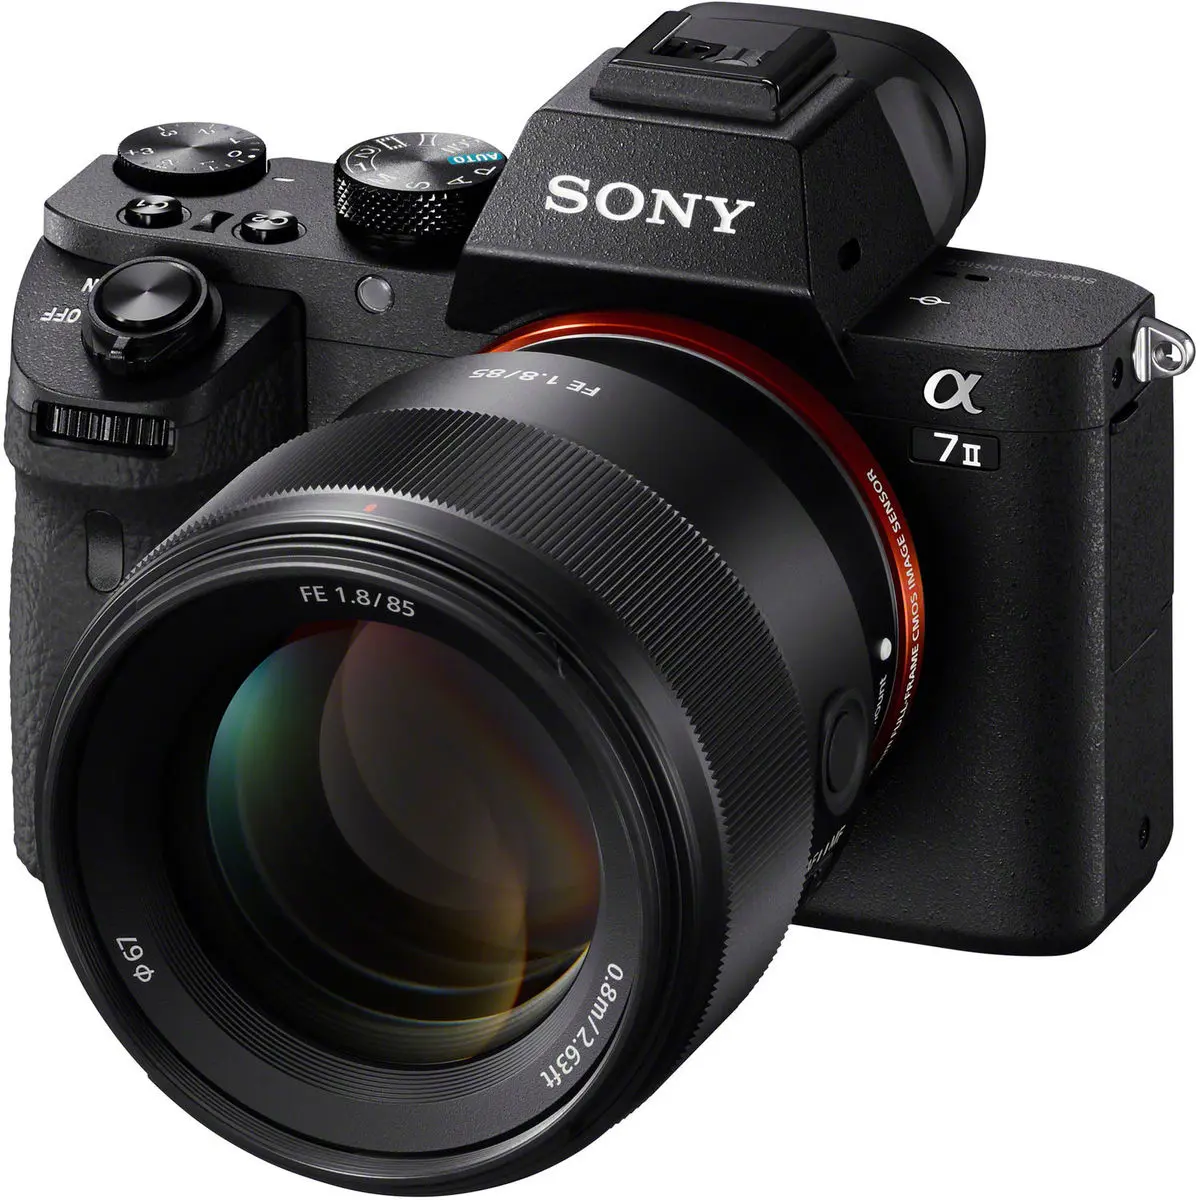 2. Sony FE 85mm F1.8 F/1.8 SEL85F18 E-Mount Full Frame Lens